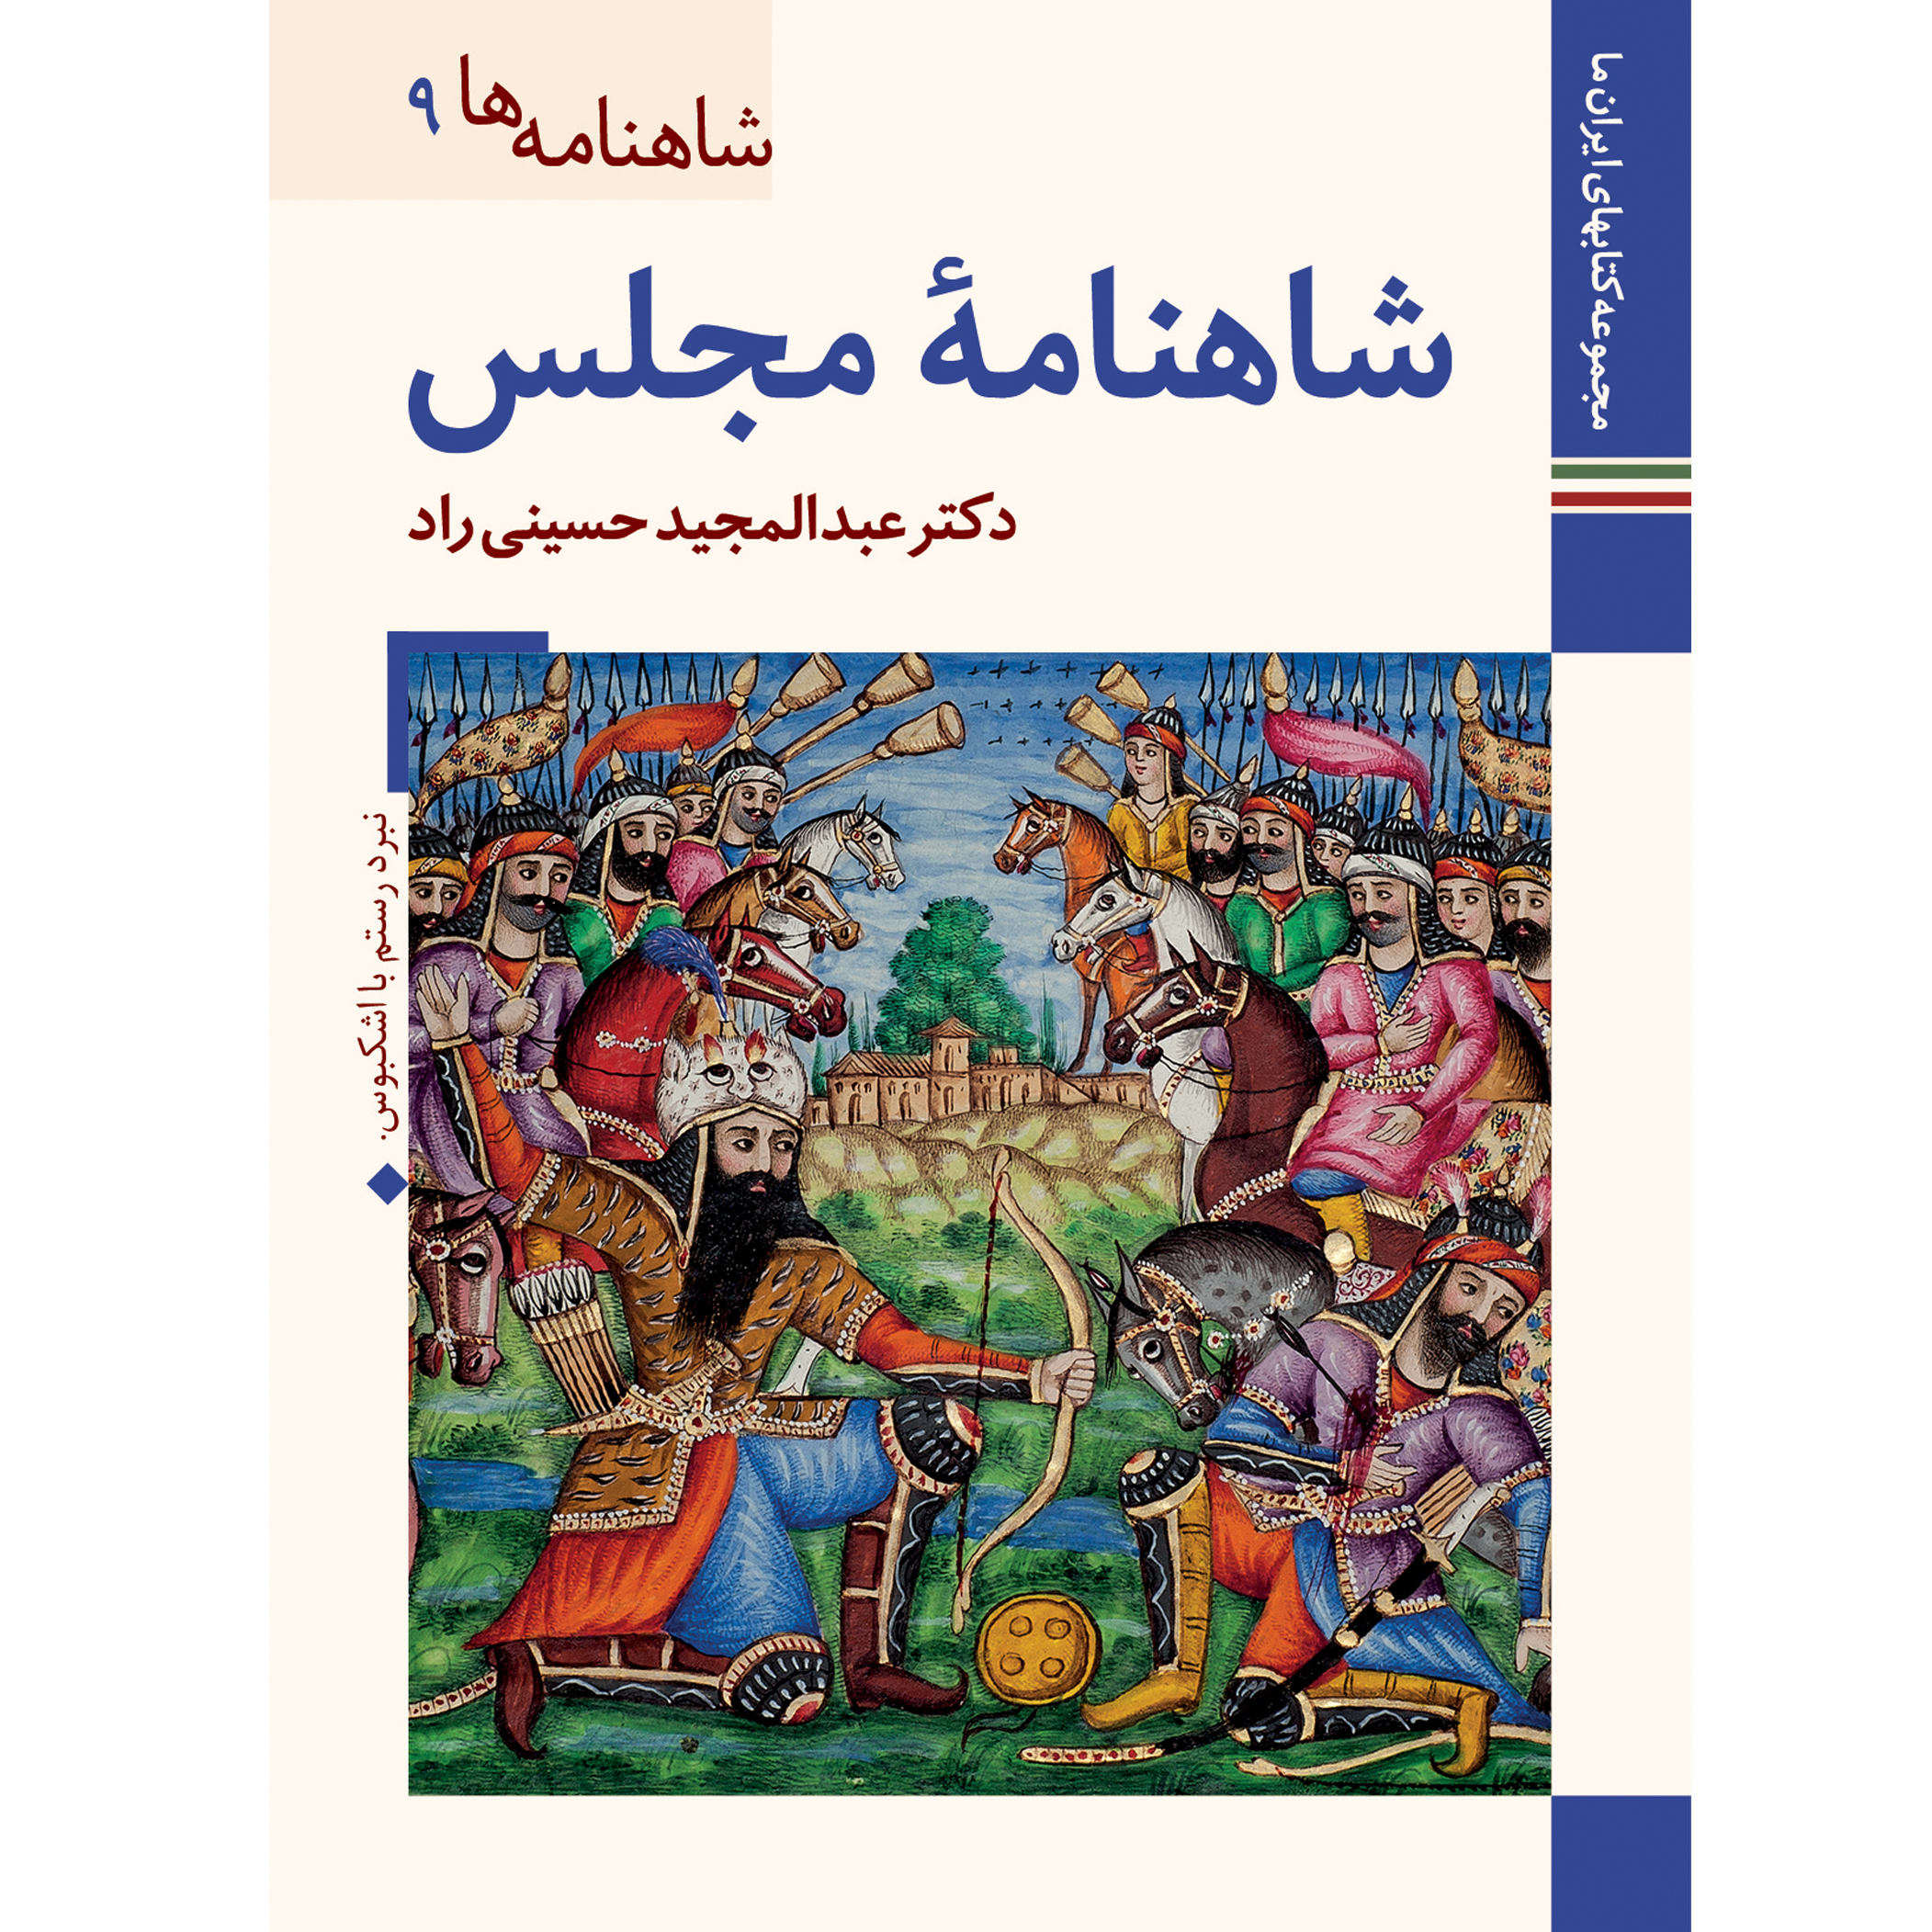 کتاب شاهنامه مجلس اثر عبدالمجید حسینی راد نشر زرین و سیمین